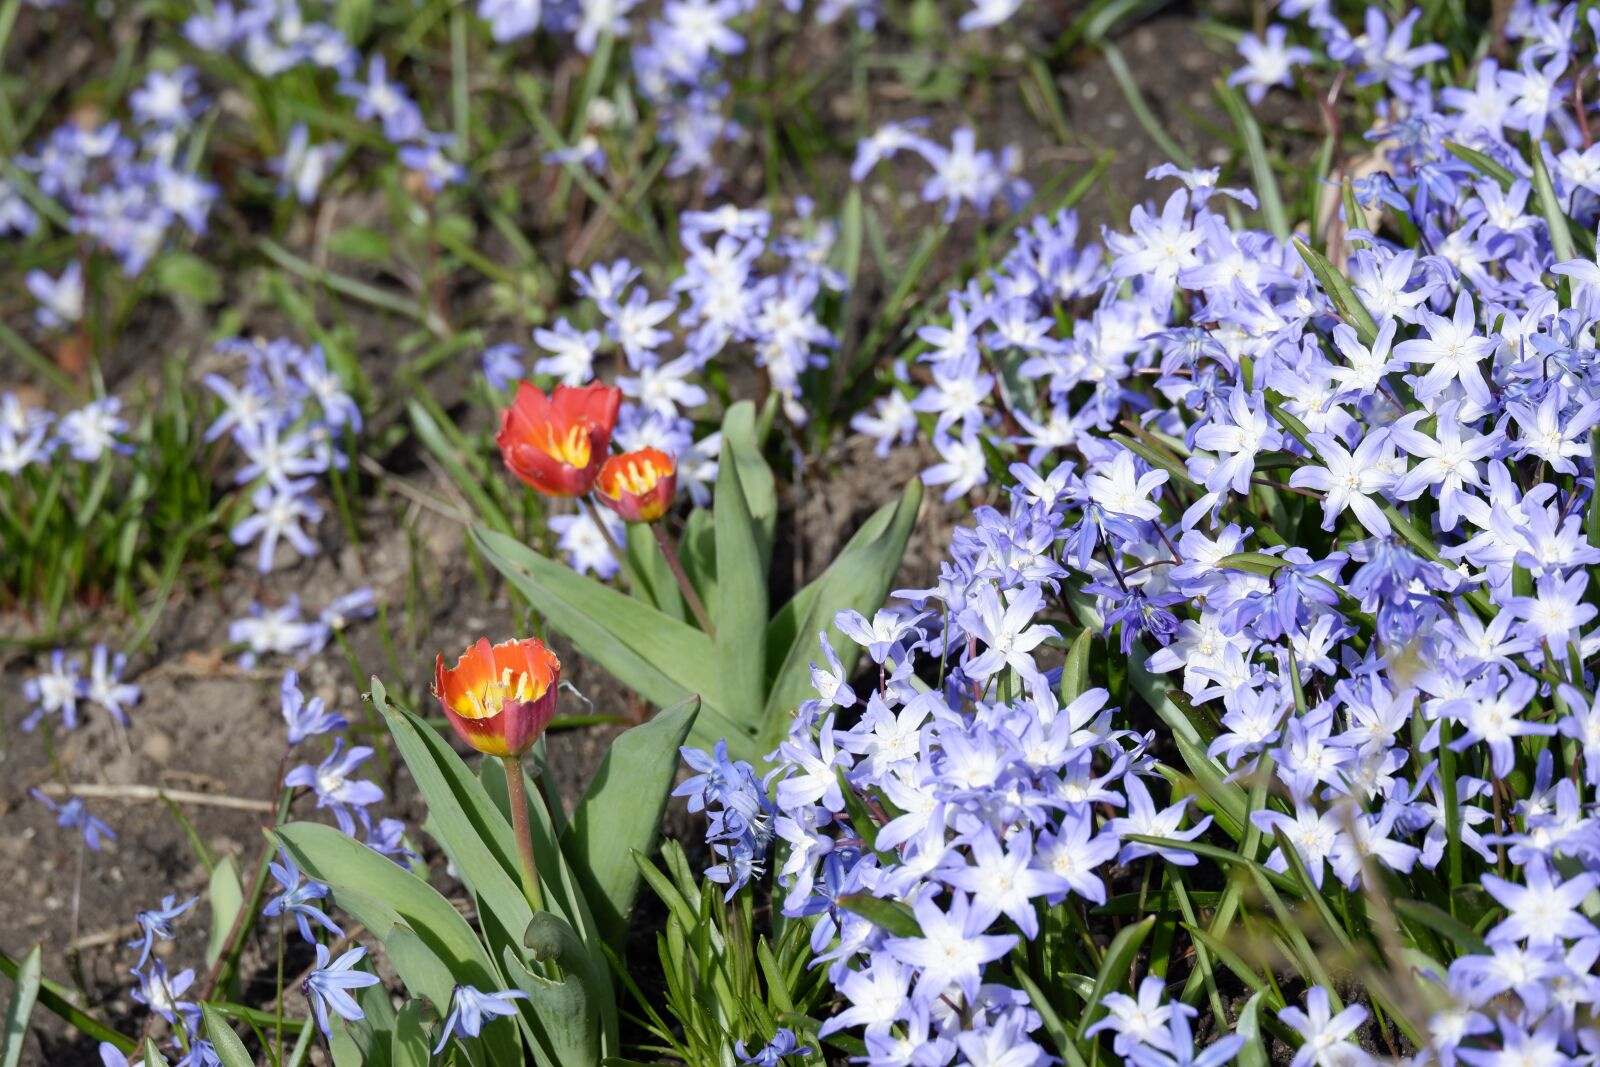 Fujifilm X-A5 sample photo. Nature, spring, garden photography